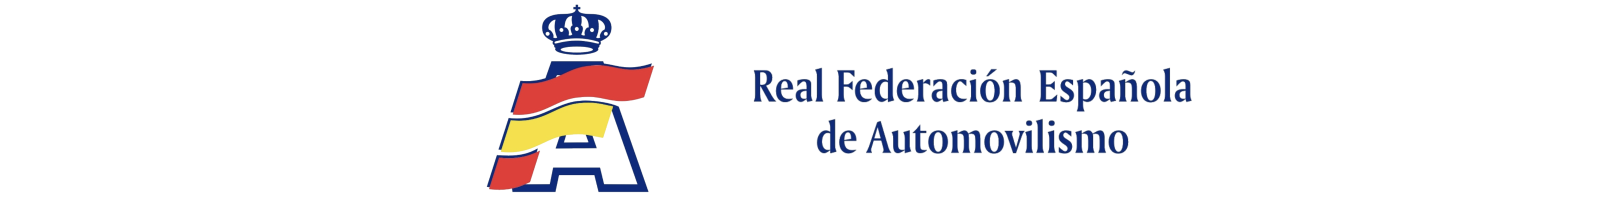 Calendarios Real Federación Española de Automovilismo